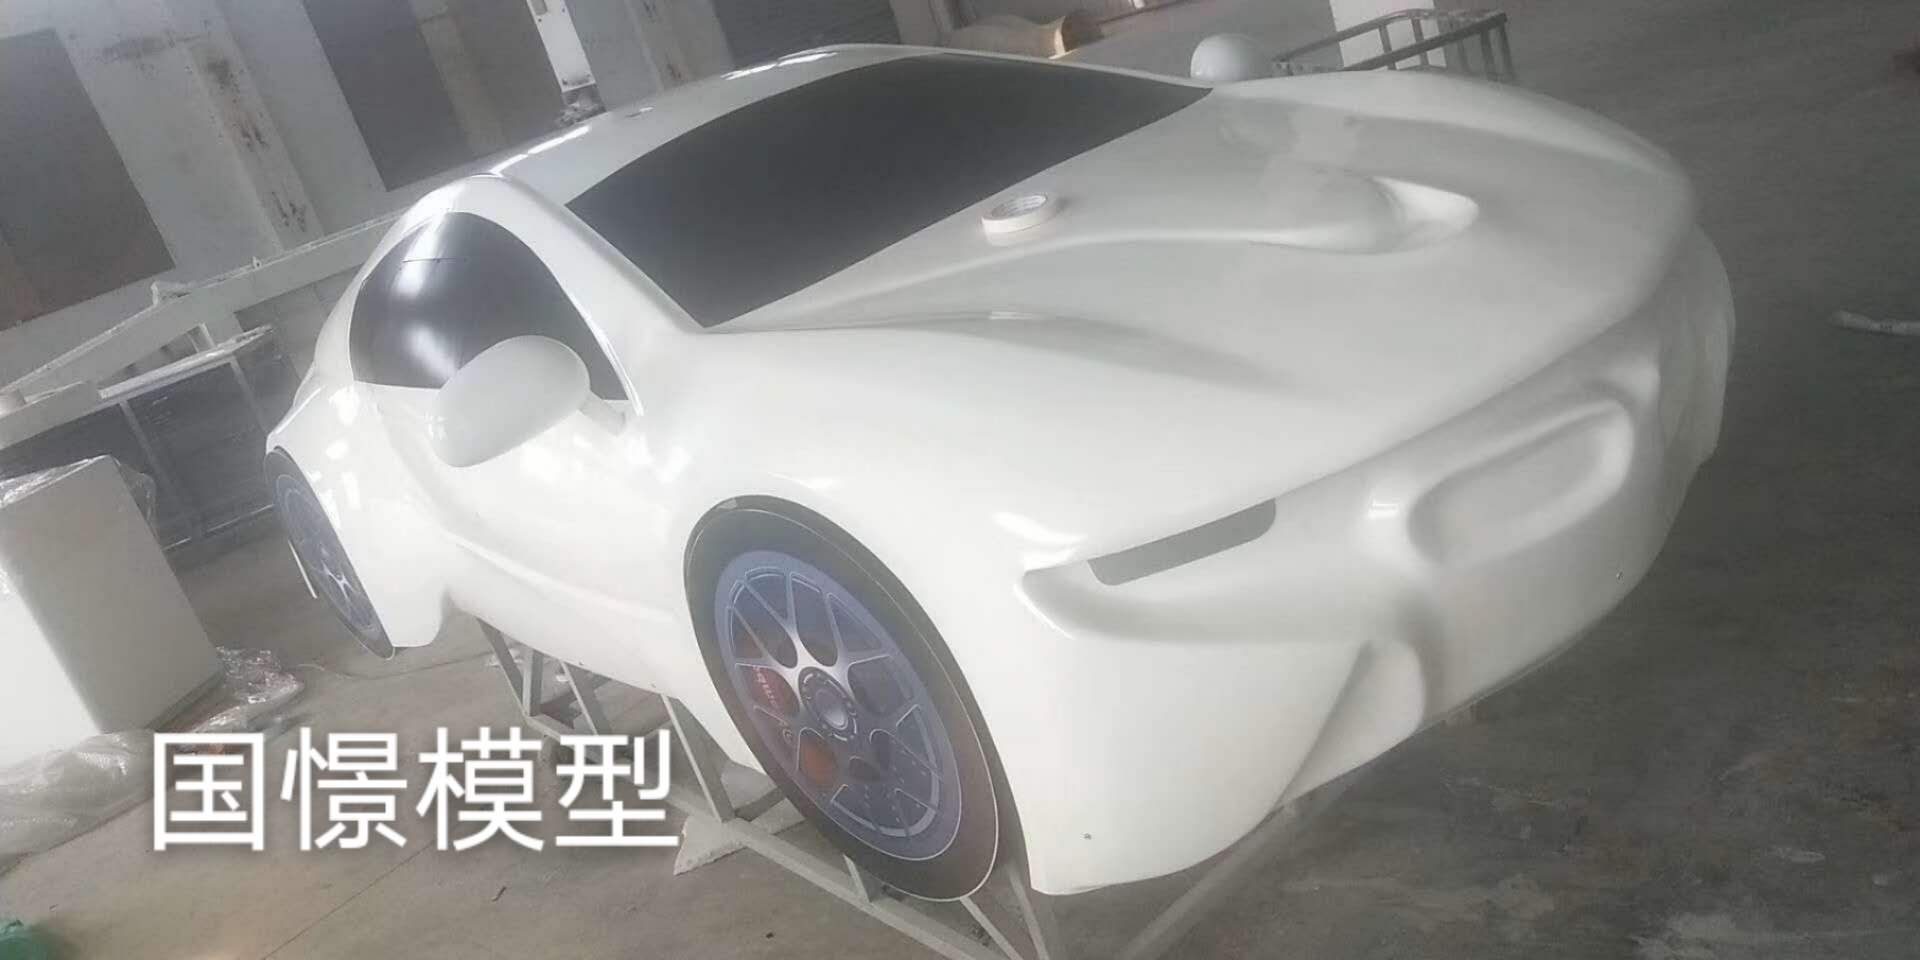 冕宁县车辆模型